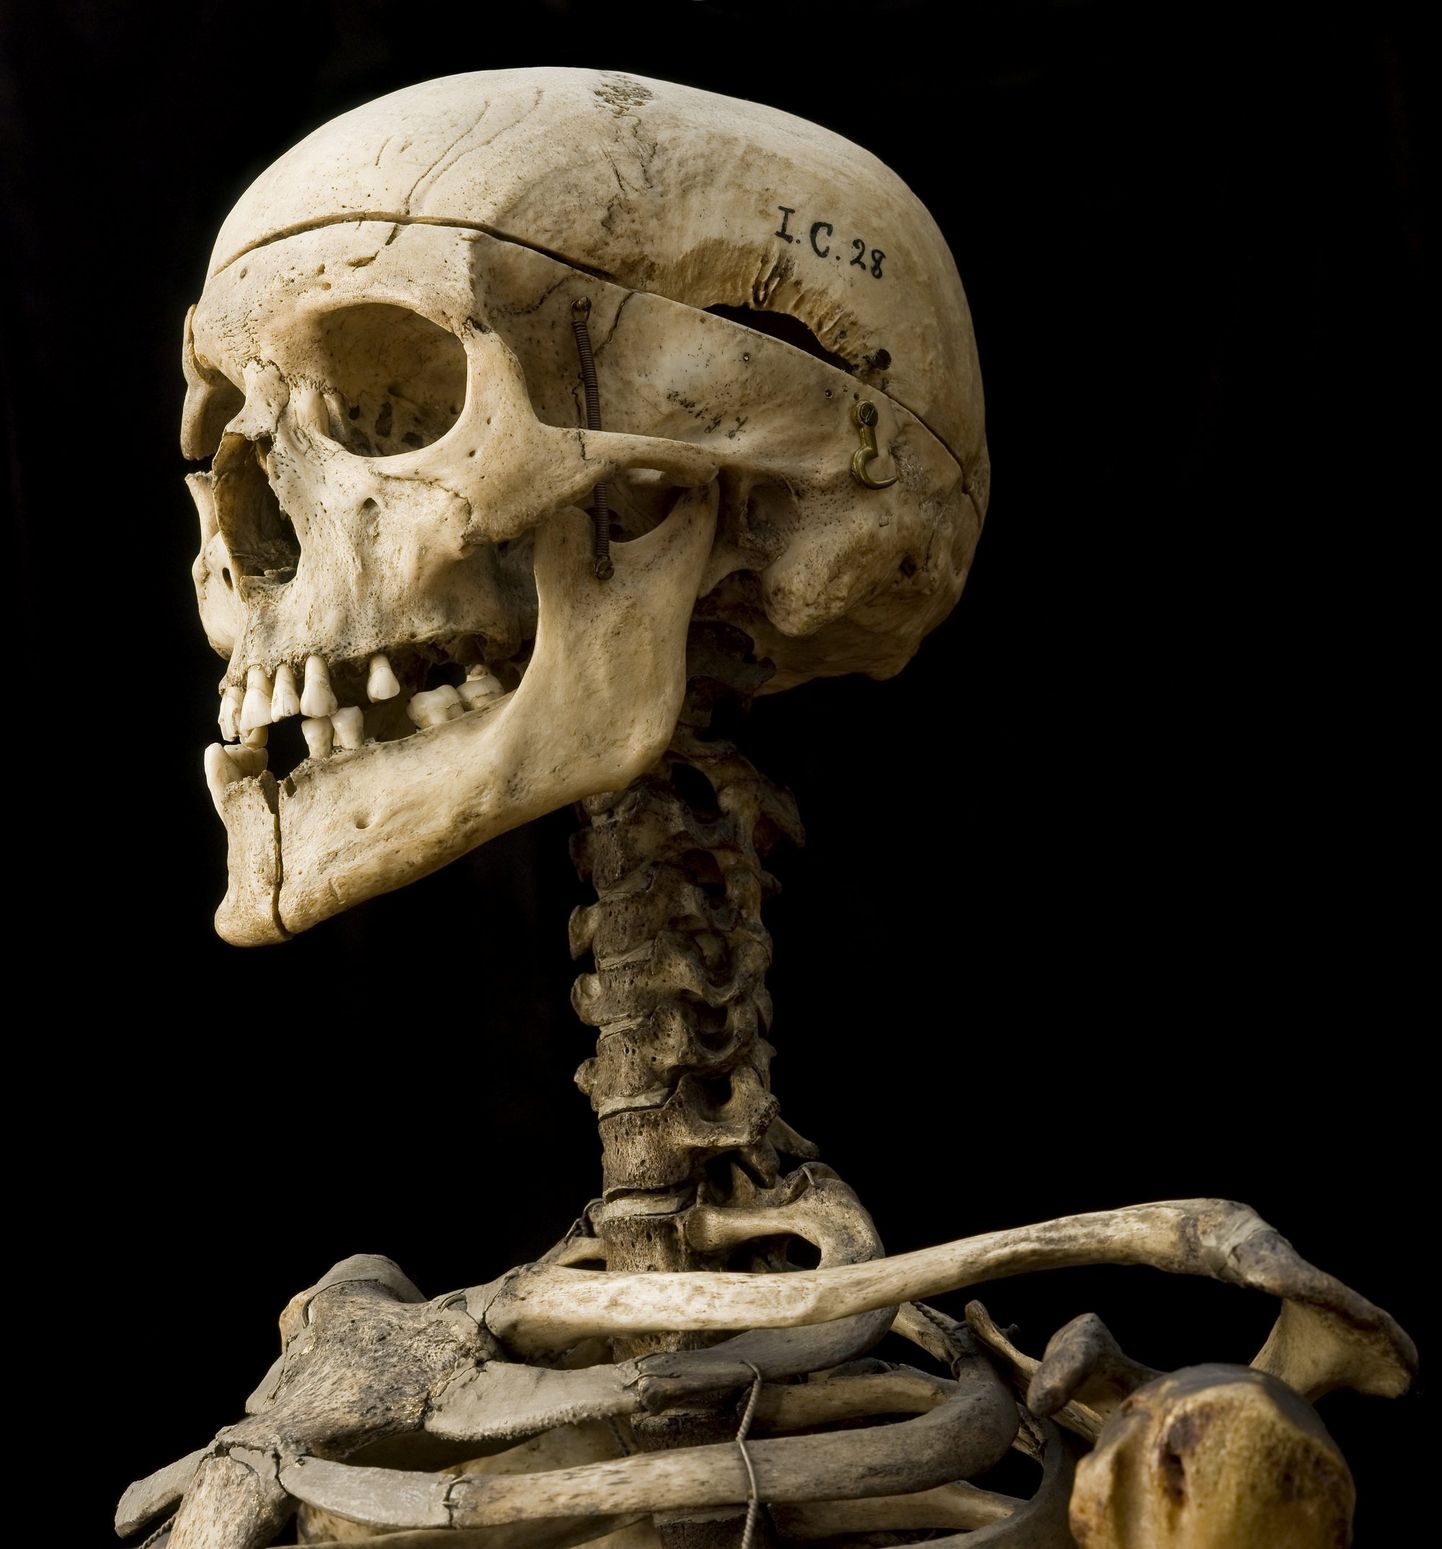 Скелет Уильяма Берка до сих пор хранится в Хирургическом музее Эдинбургского университета. Пригвожденный к позорному столбу за свои гнусные преступления, этот экспонат наверняка заставляет посетителей музея задуматься о вопросах медицинской этики.